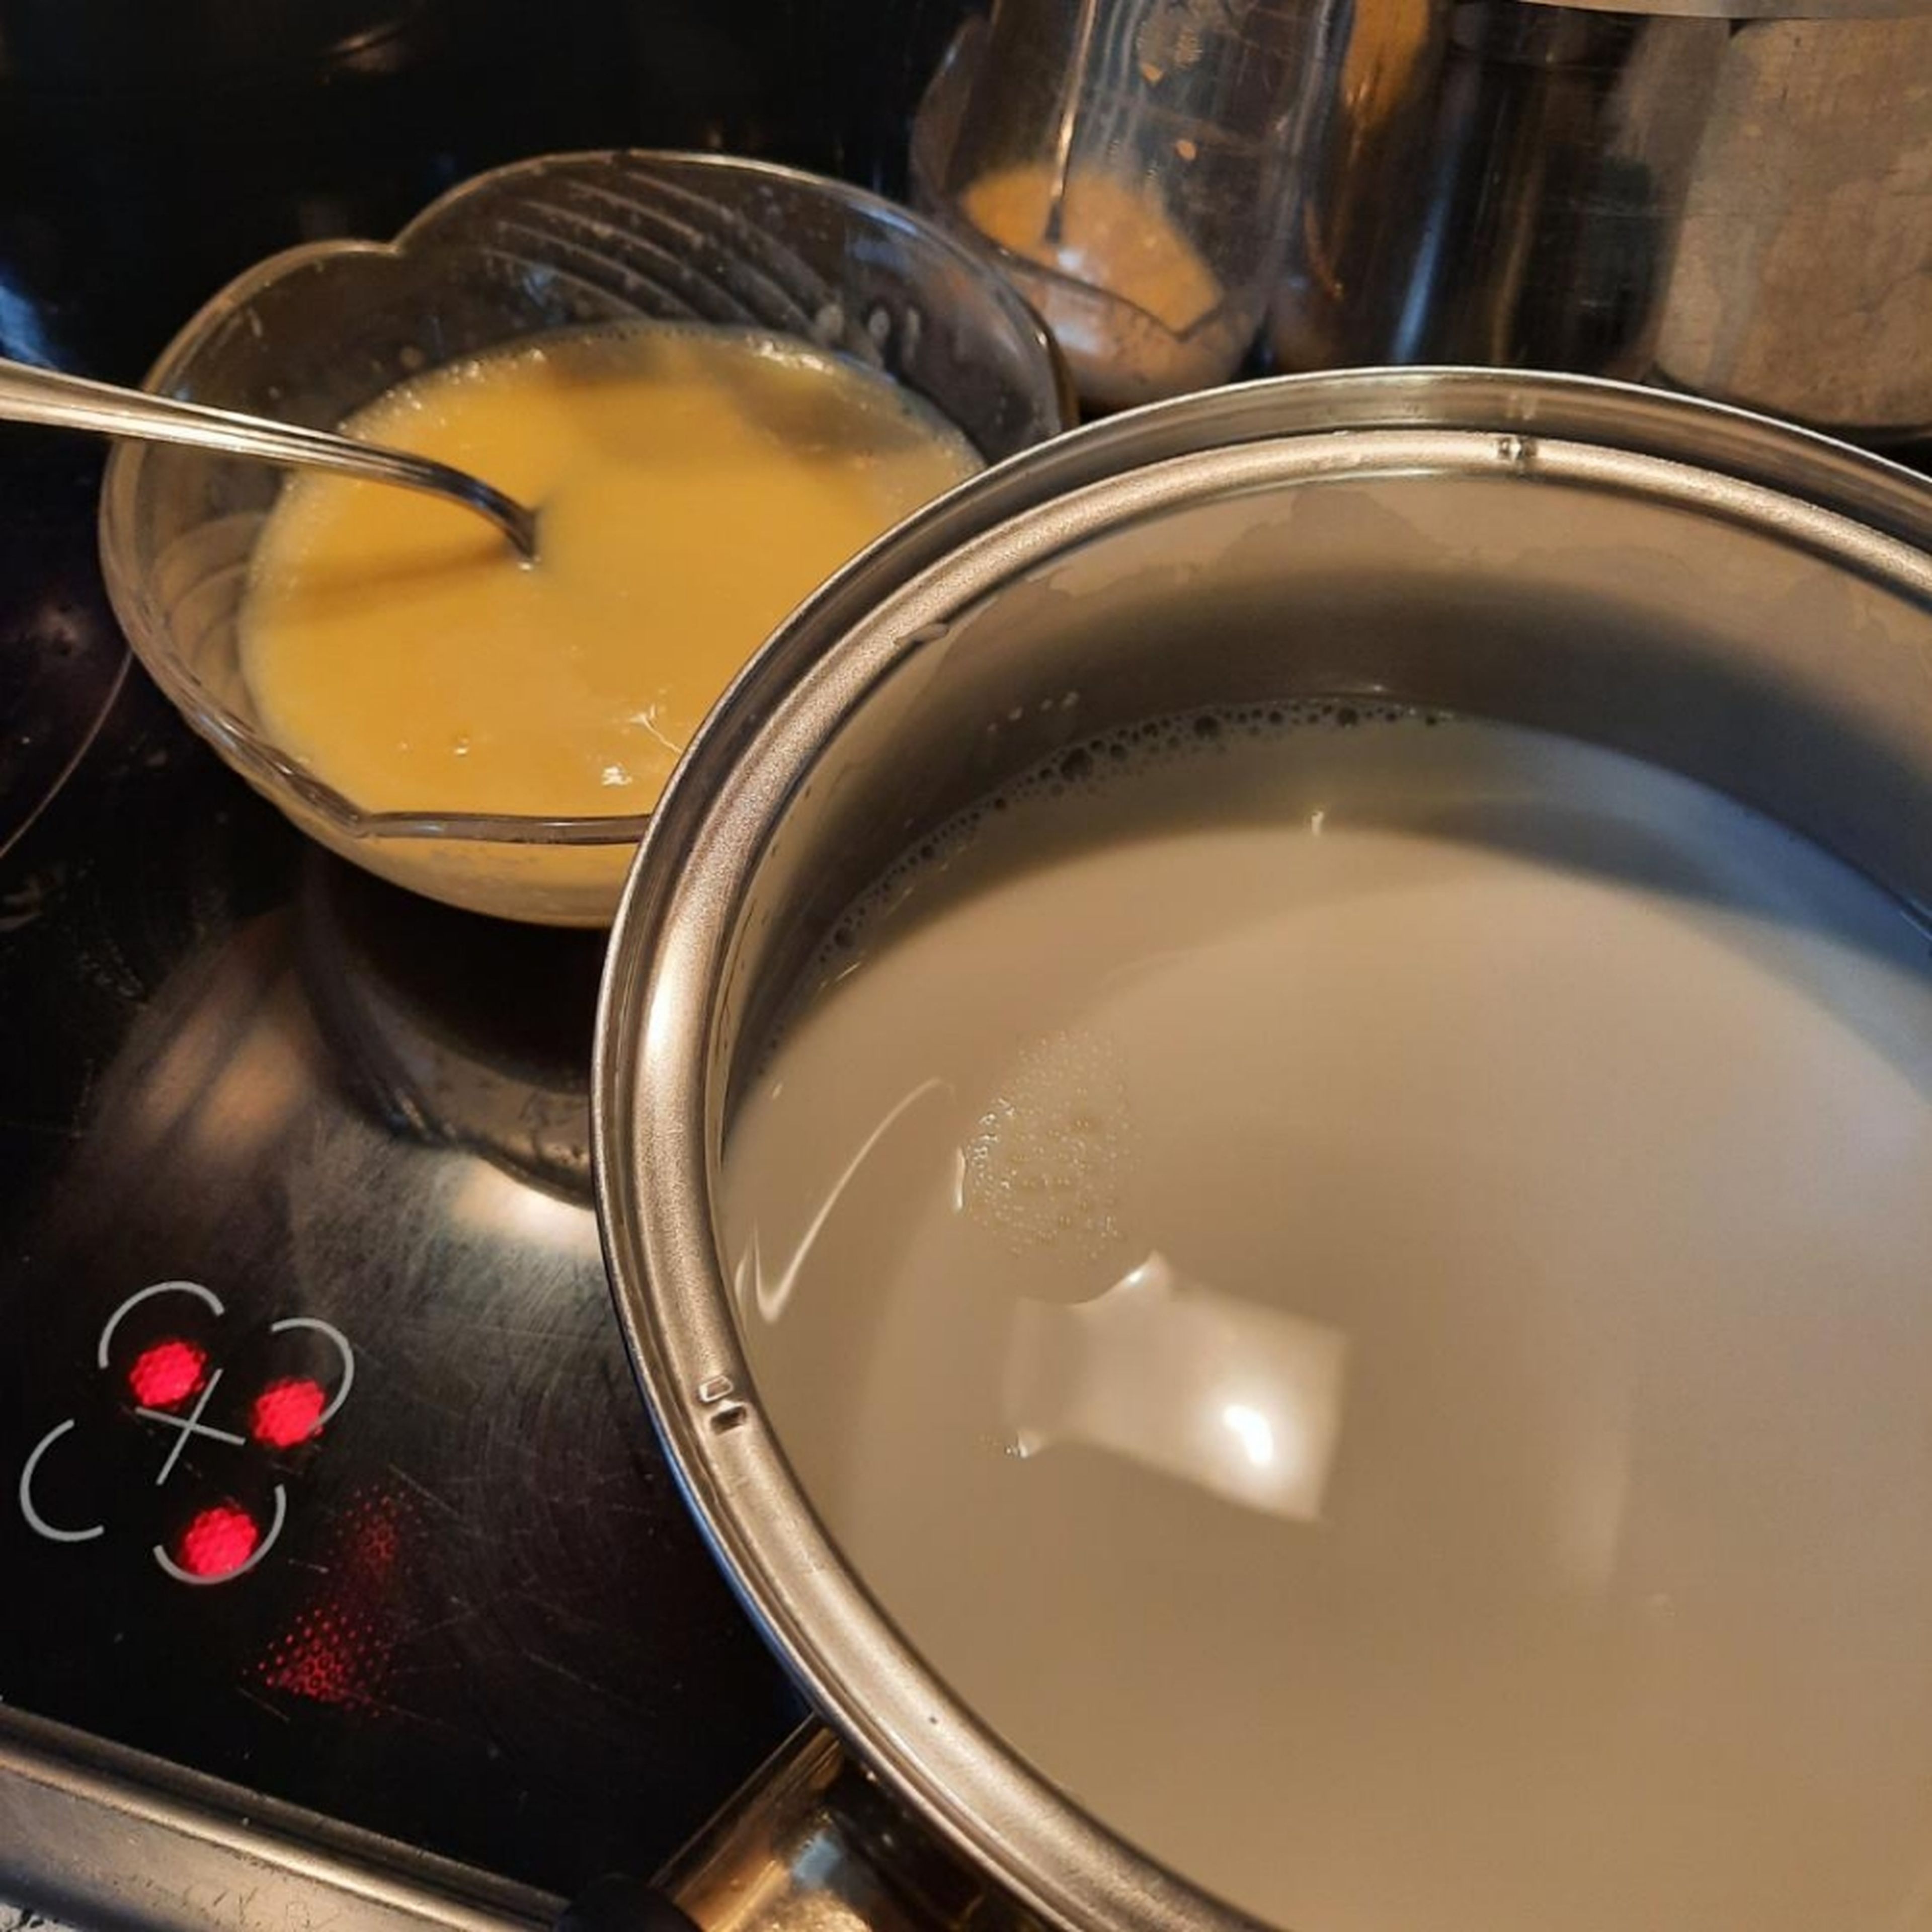 Während der Kranz im Ofen ist, den Pudding vorbereiten. Dafür 8 EL von der Milch abnehmen und mit dem Puddingpulver und dem Zucker verrühren. Übrige Milch aufkochen und den Pudding einrühren. Zum Schluss die Butter einrühren. Den Pudding mit Frischhaltefolie abdecken (so bildet sich keine Haut) und auf zimmertemperatur auskühlen lassen.